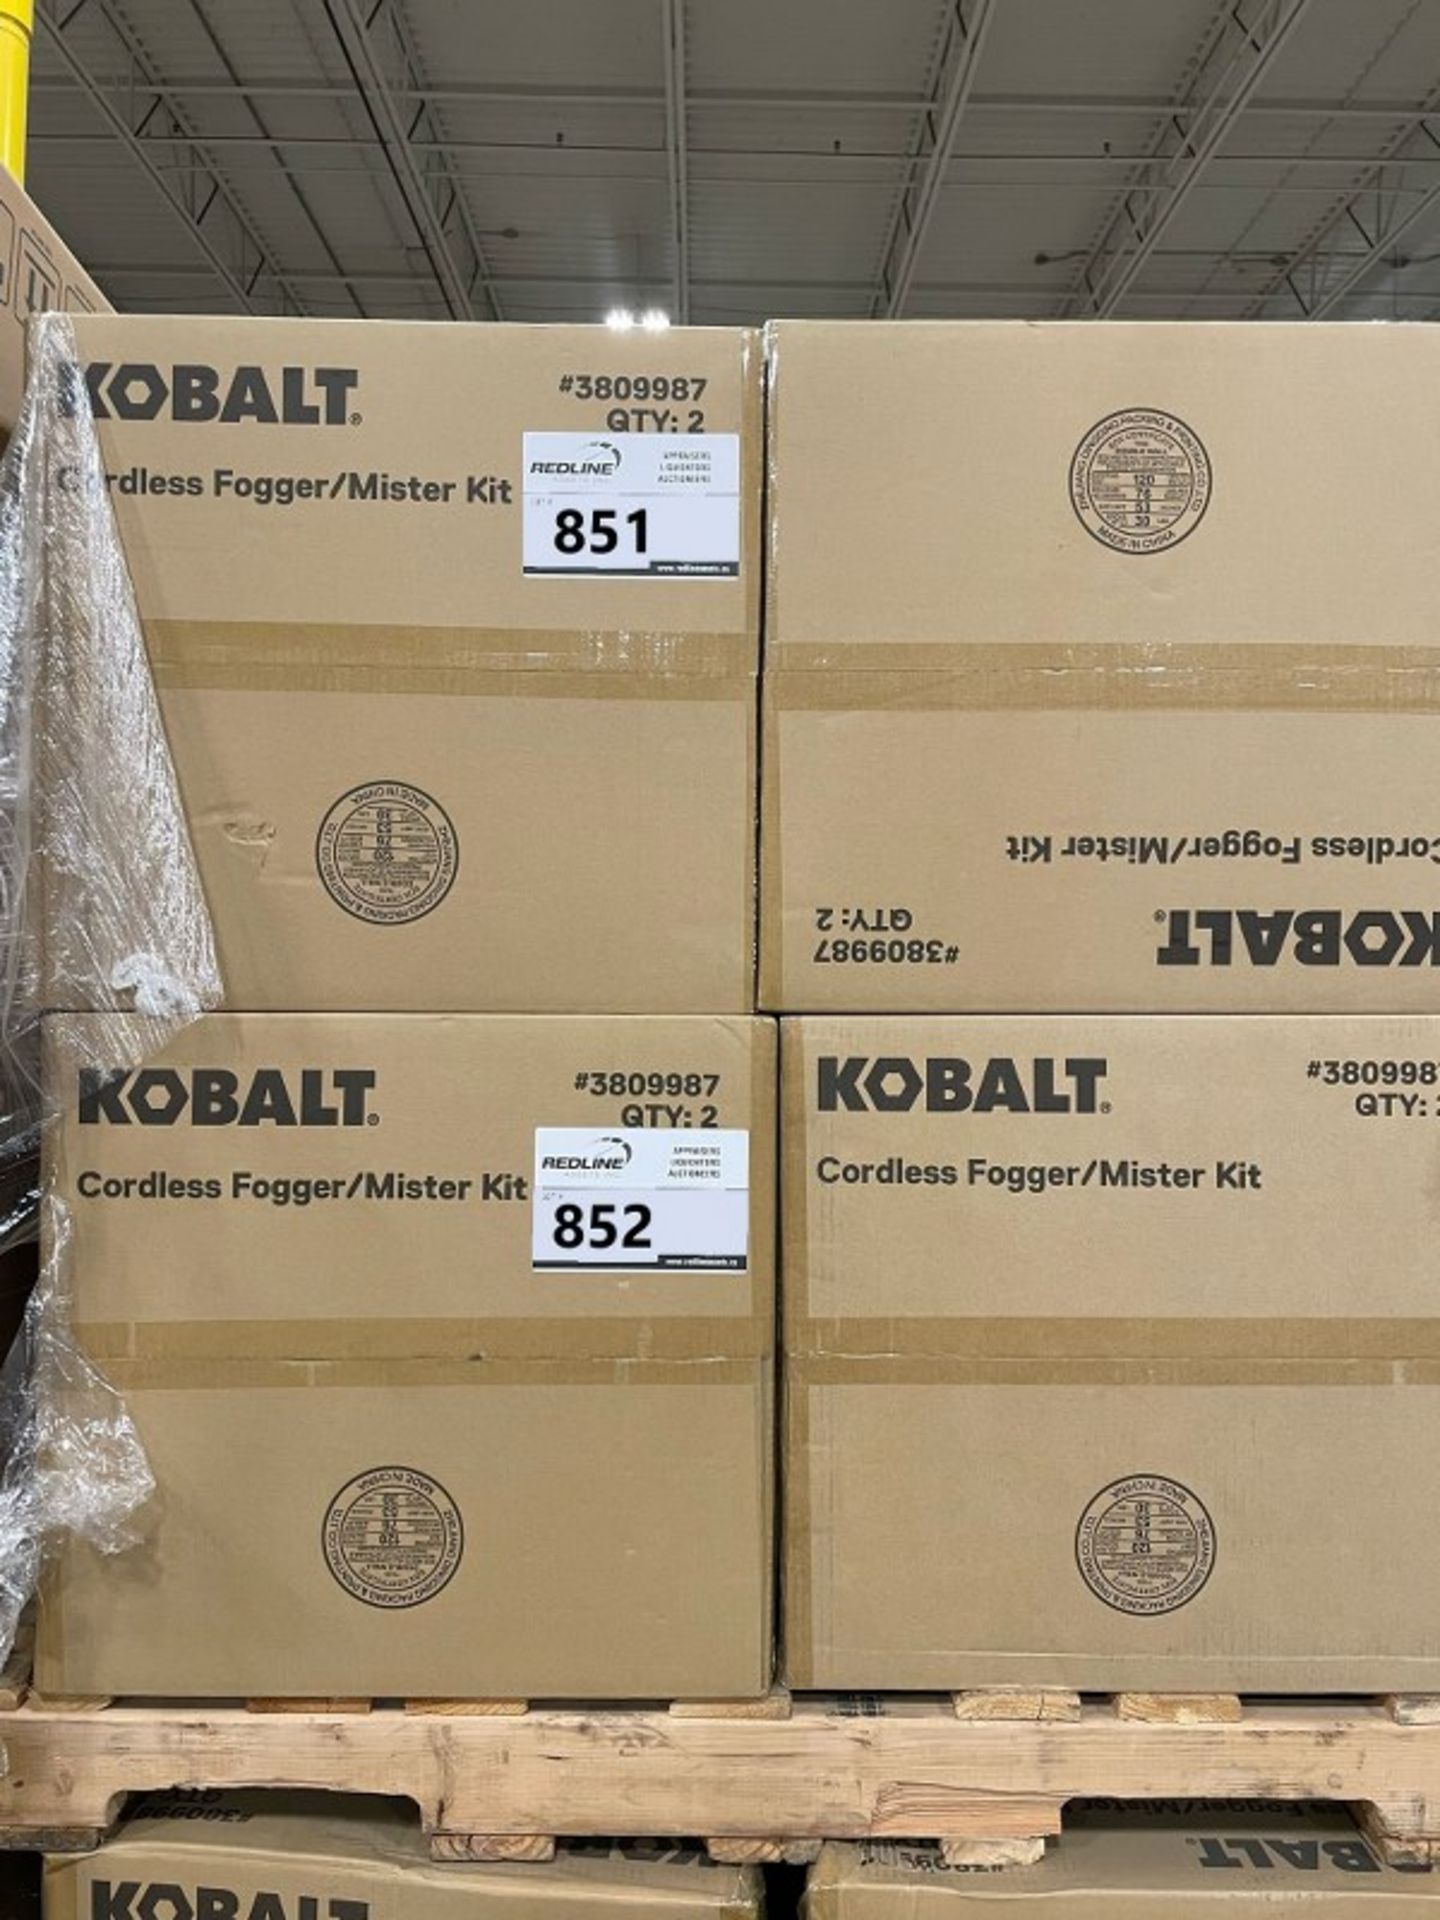 Kobalt - Cordless Fogger/Mister Kit - Image 3 of 3